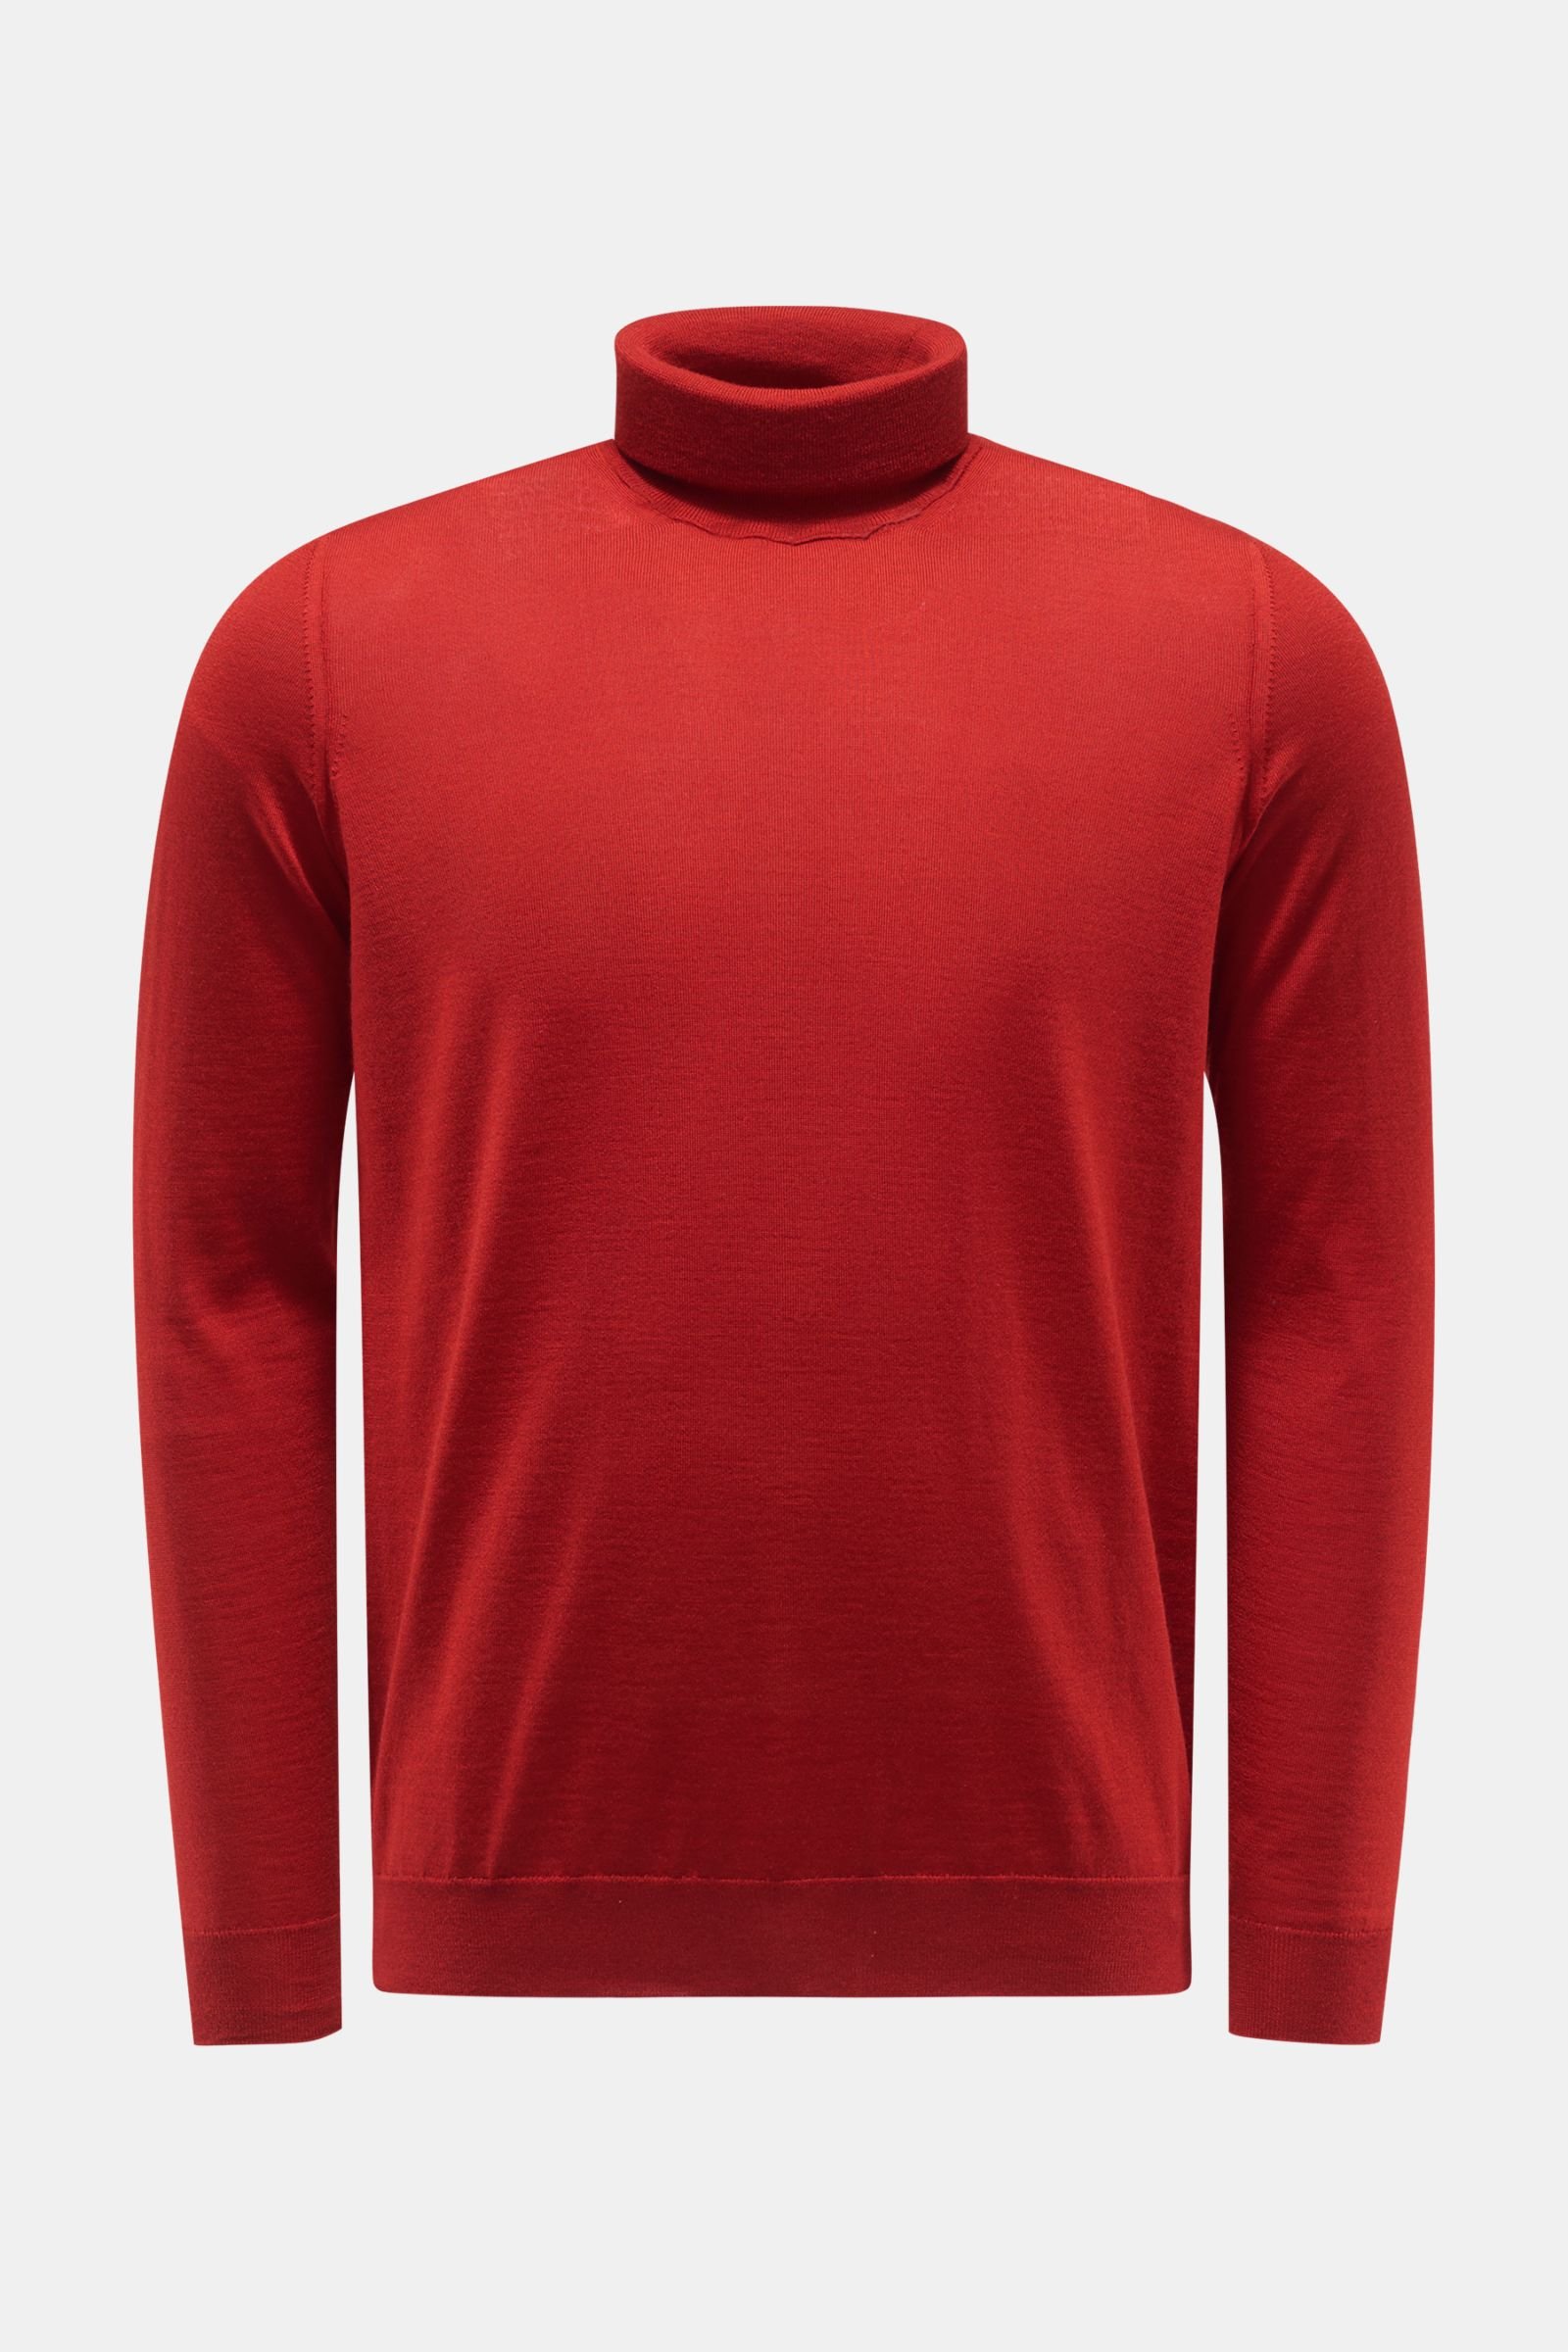 Cashmere fine knit turtleneck jumper red